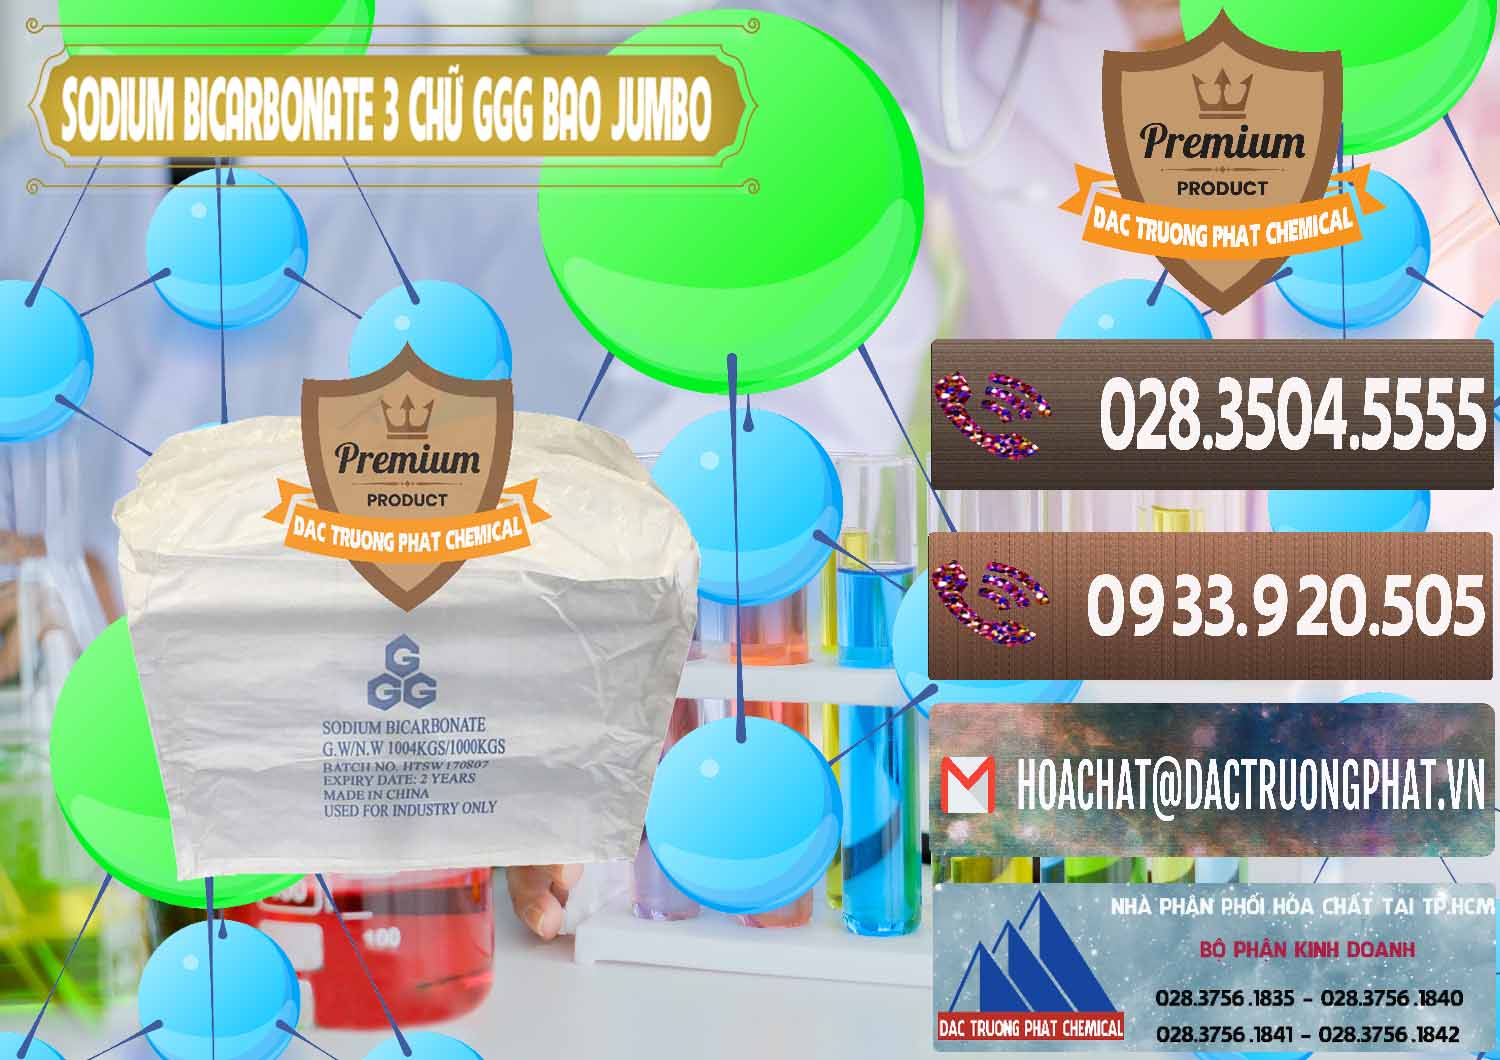 Nơi chuyên bán - cung cấp Sodium Bicarbonate – Bicar NaHCO3 Food Grade 3 Chữ GGG Bao Jumbo ( Bành ) Trung Quốc China - 0260 - Công ty nhập khẩu _ phân phối hóa chất tại TP.HCM - hoachatviet.net